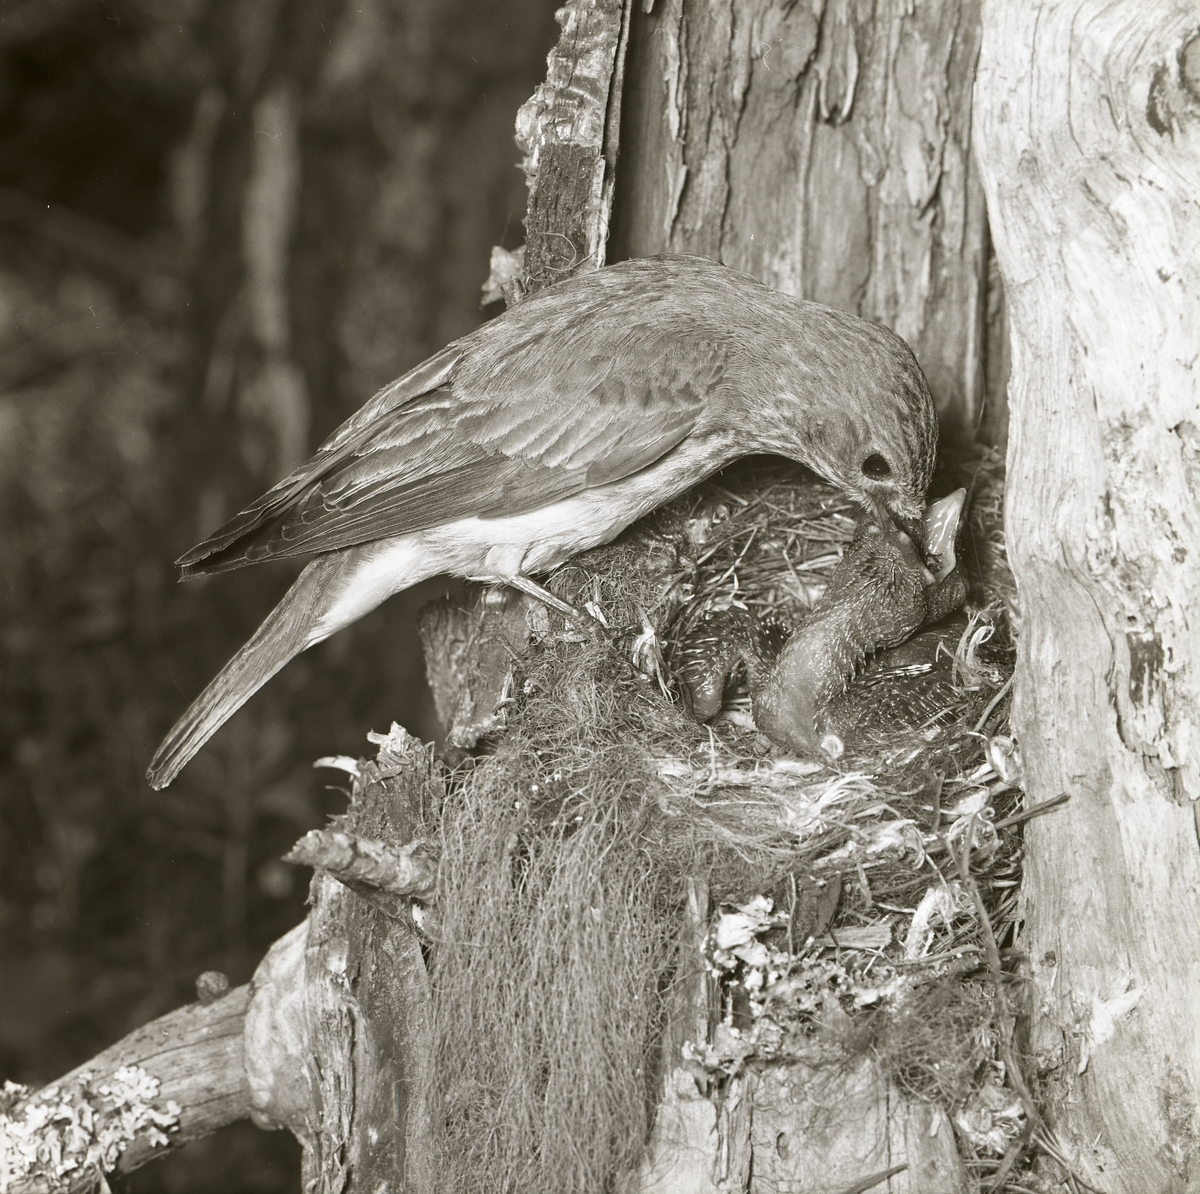 En fågelhona har landat vid sitt bo och har i sin näbb mat till gökungen. Honan släpper maten direkt i ungens näbb. Bilden fångas av fotograf Hilding Mickelsson sommaren 1961.